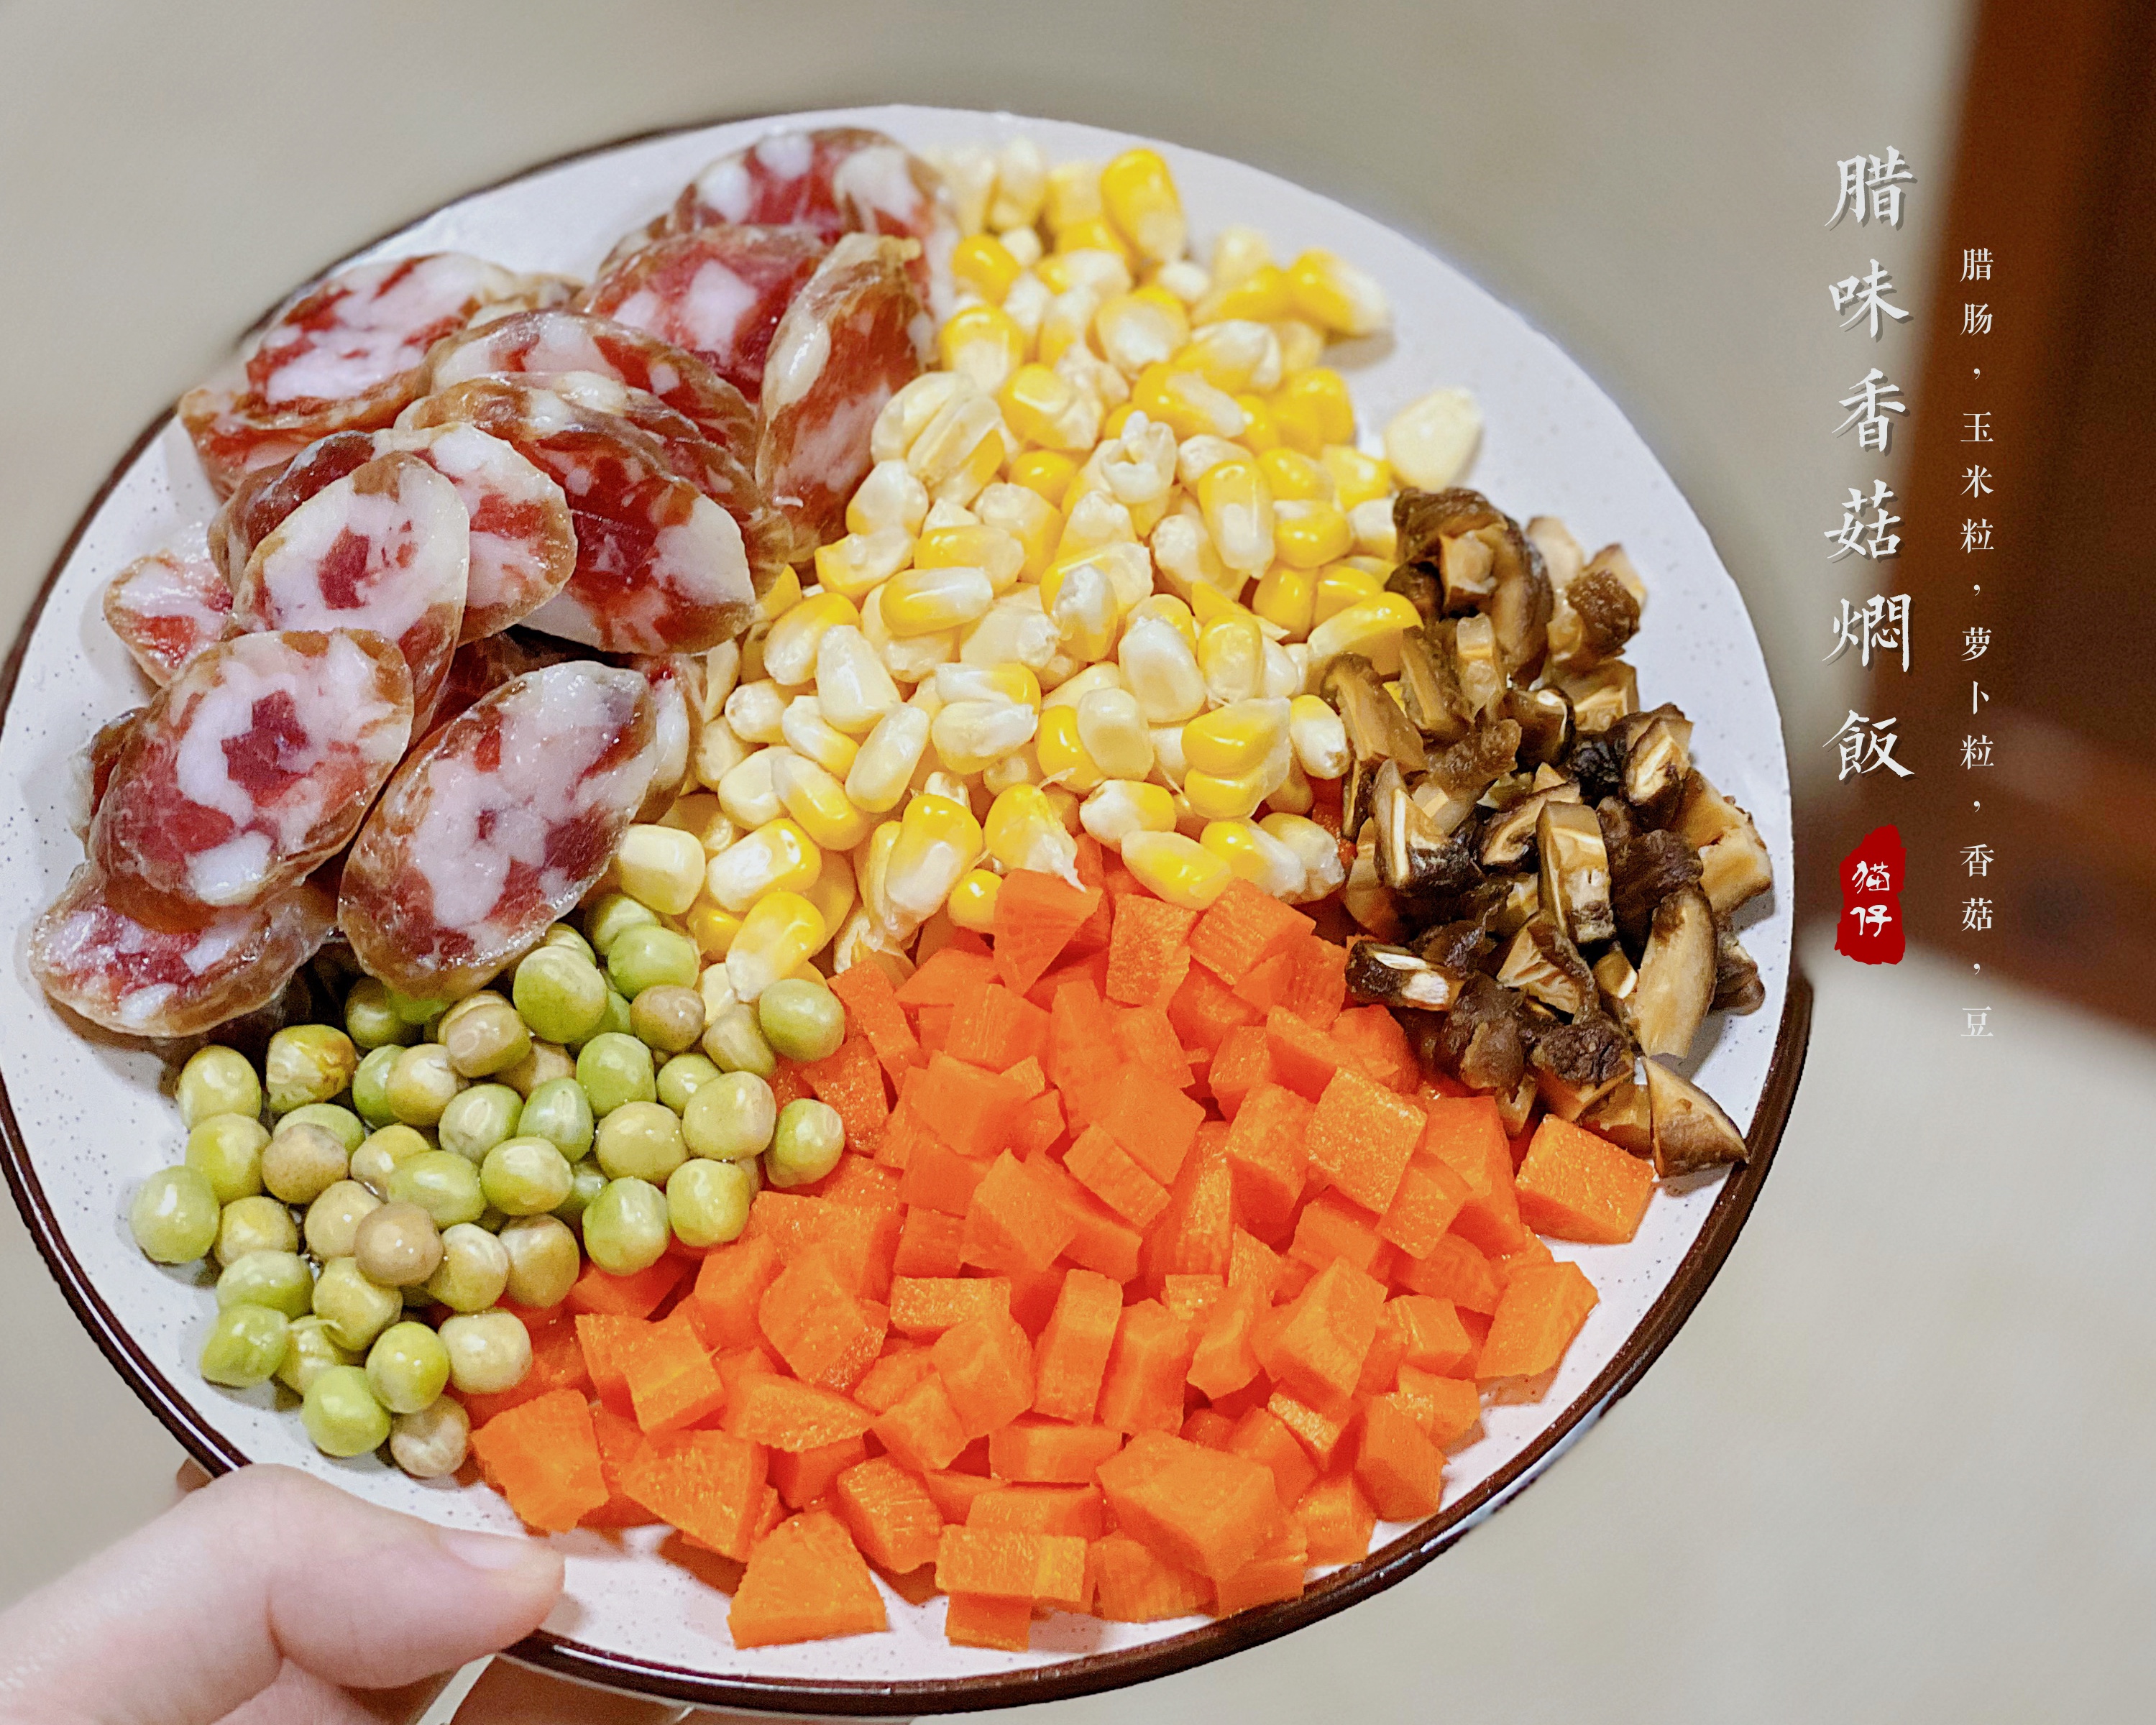 电饭锅版腊肠焖饭的做法